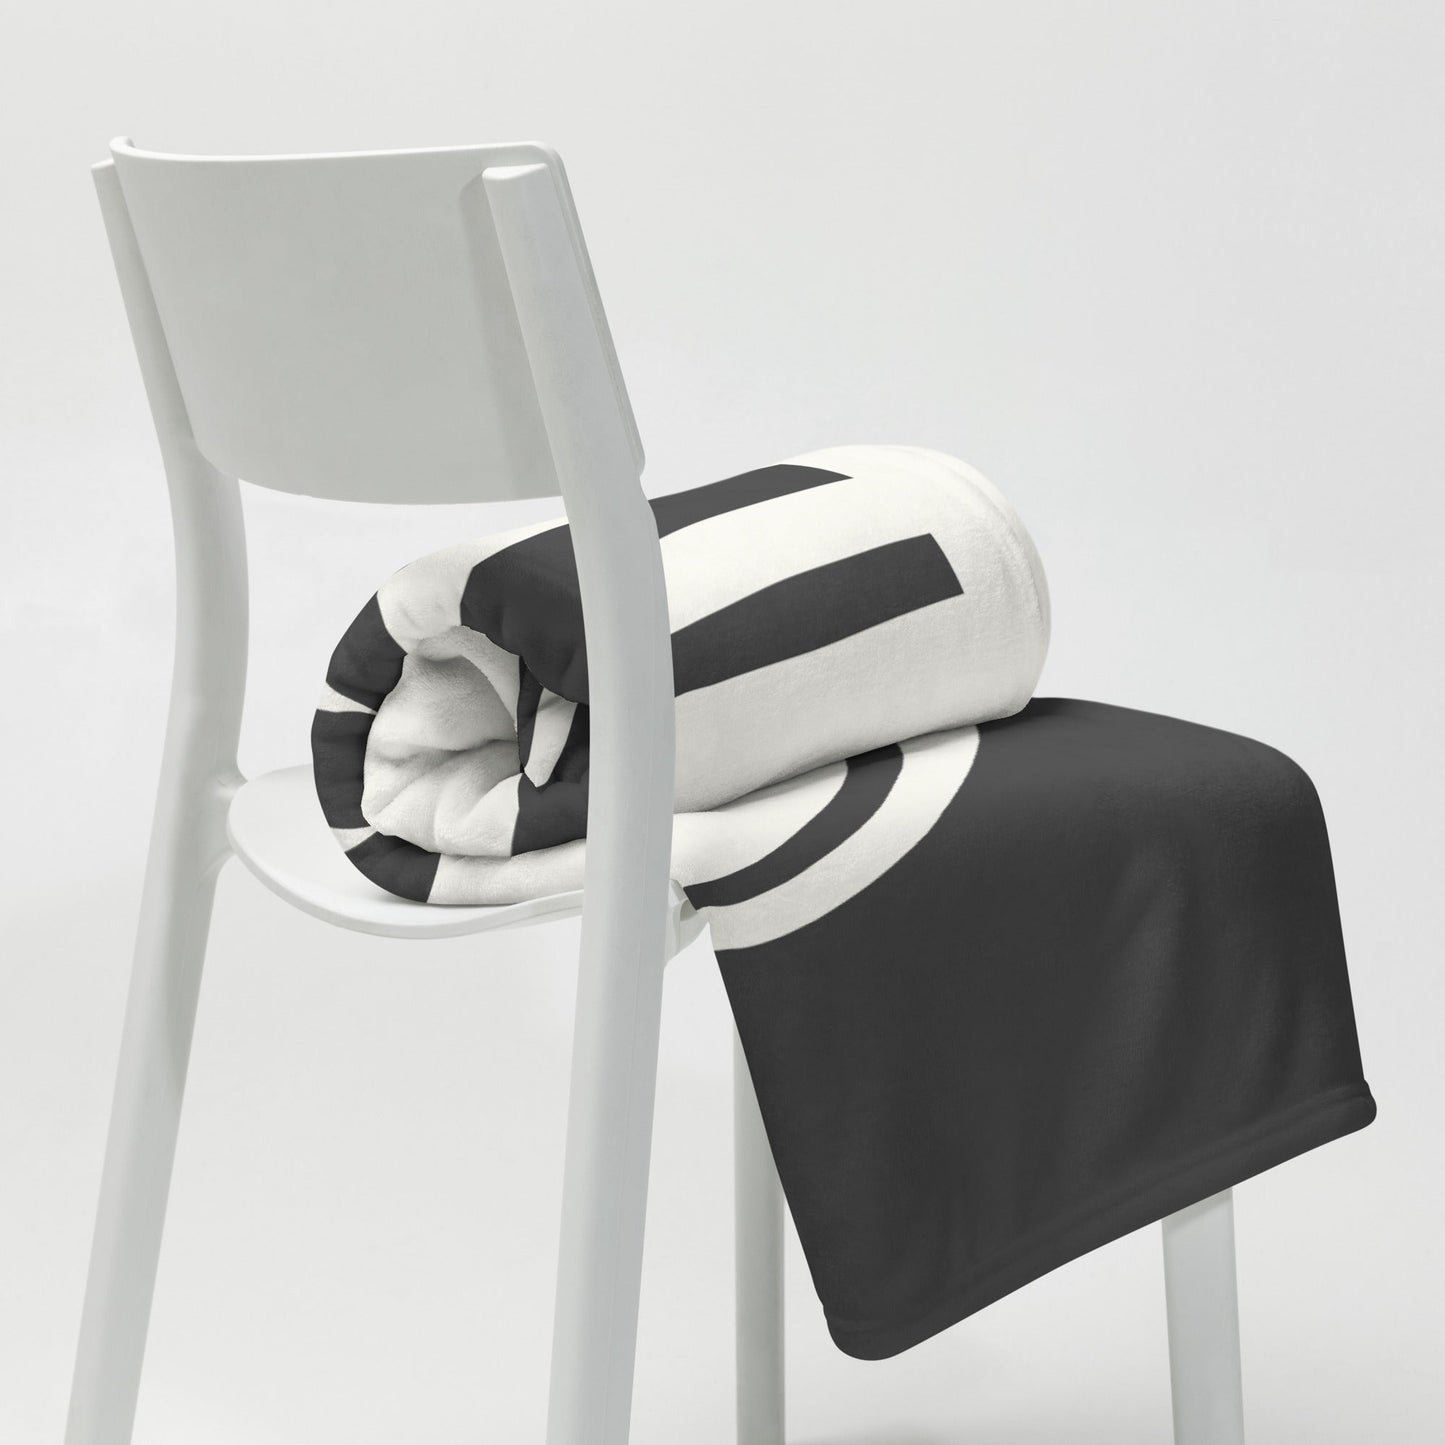 Unique Travel Gift Throw Blanket - White Oval • ZRH Zurich • YHM Designs - Image 03